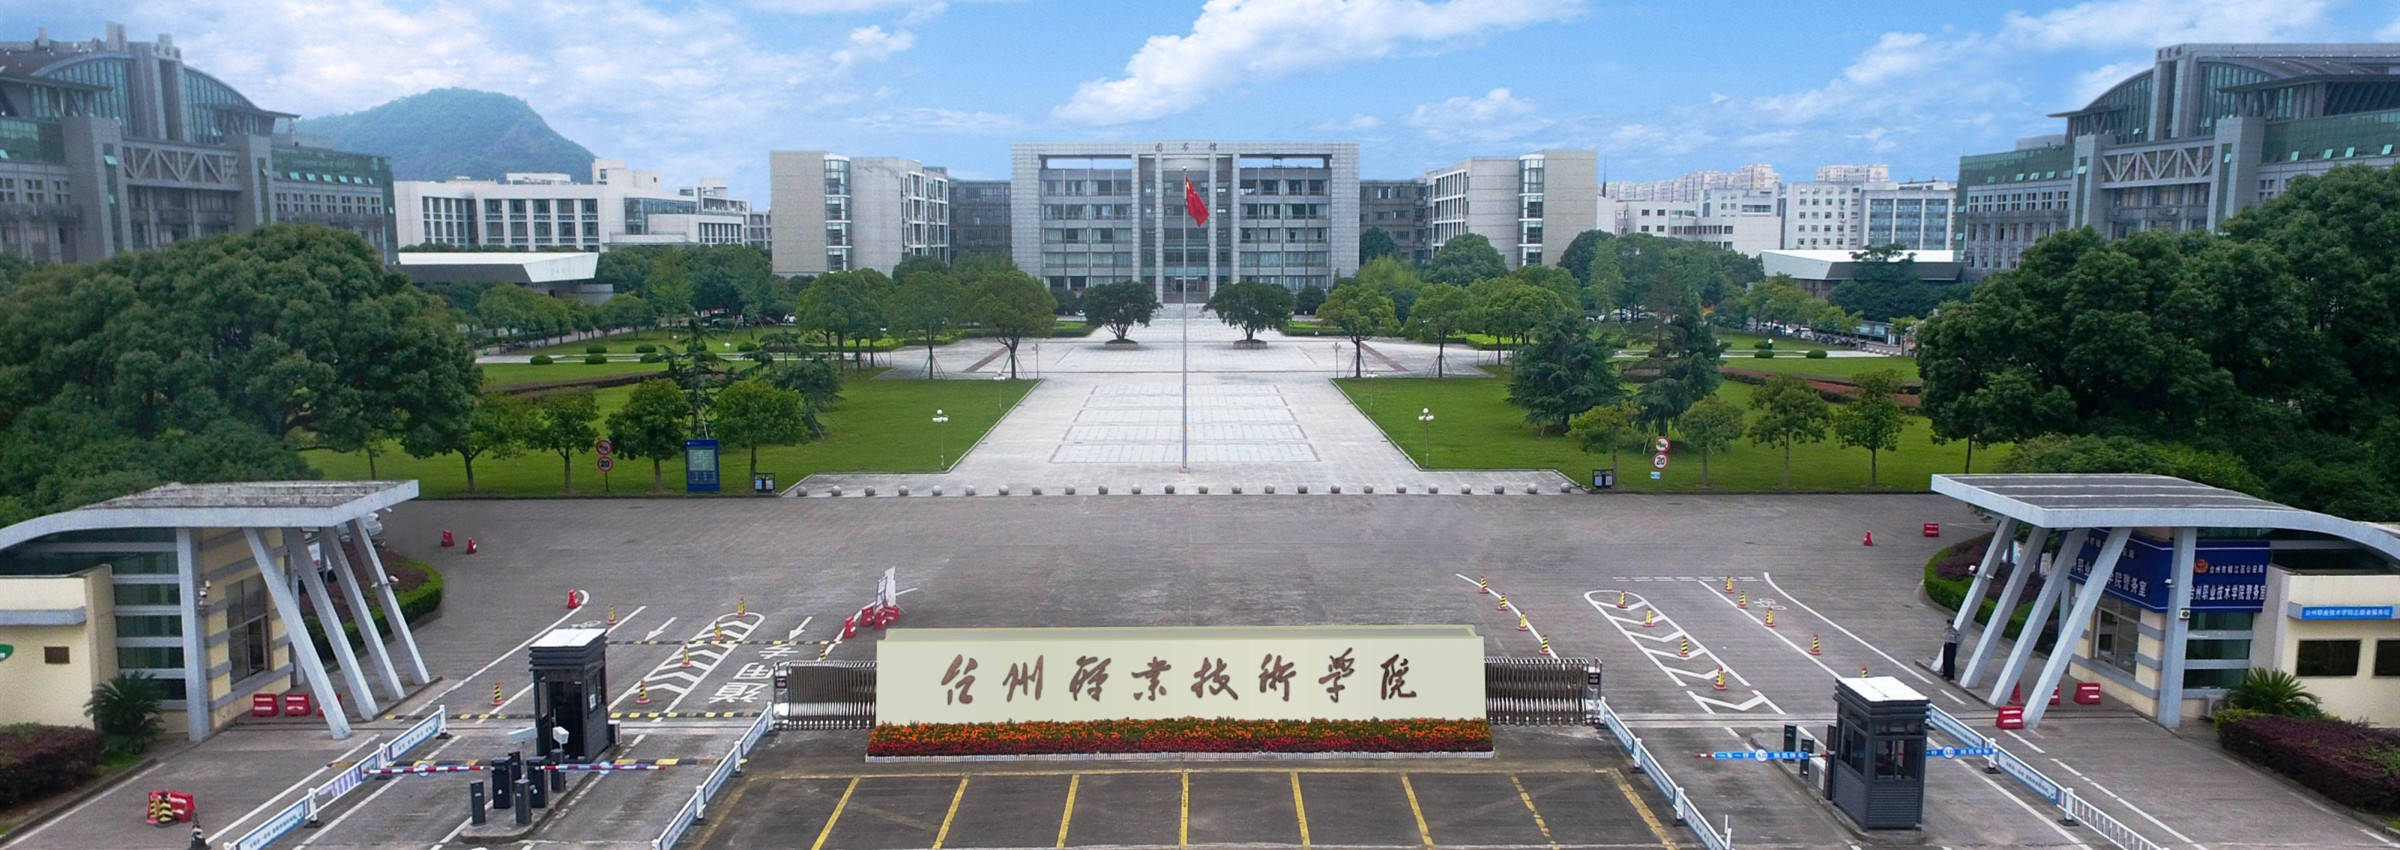 浙江省台州职业技术学院2021年上半年公开招聘工作人员42人公告